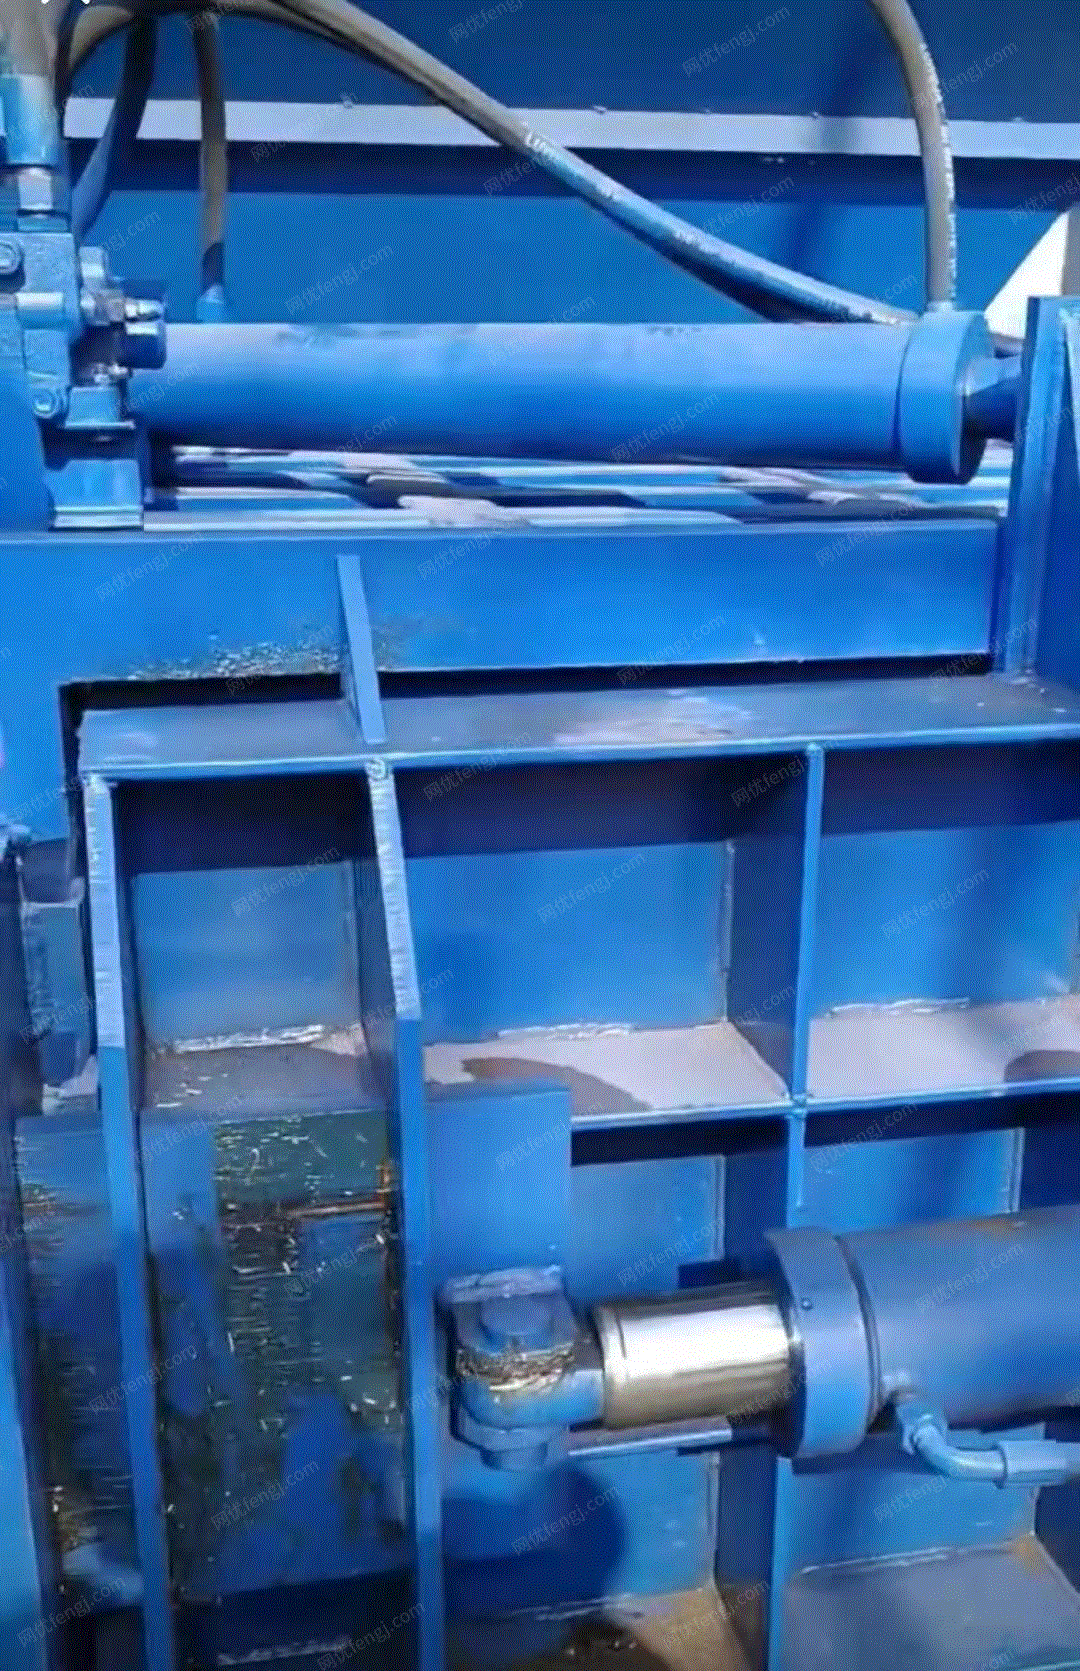 安徽马鞍山出售江苏产闲置120吨卧式打包机 (废纸废塑料都能用) 用了几个月,能正常使用,看货议价.